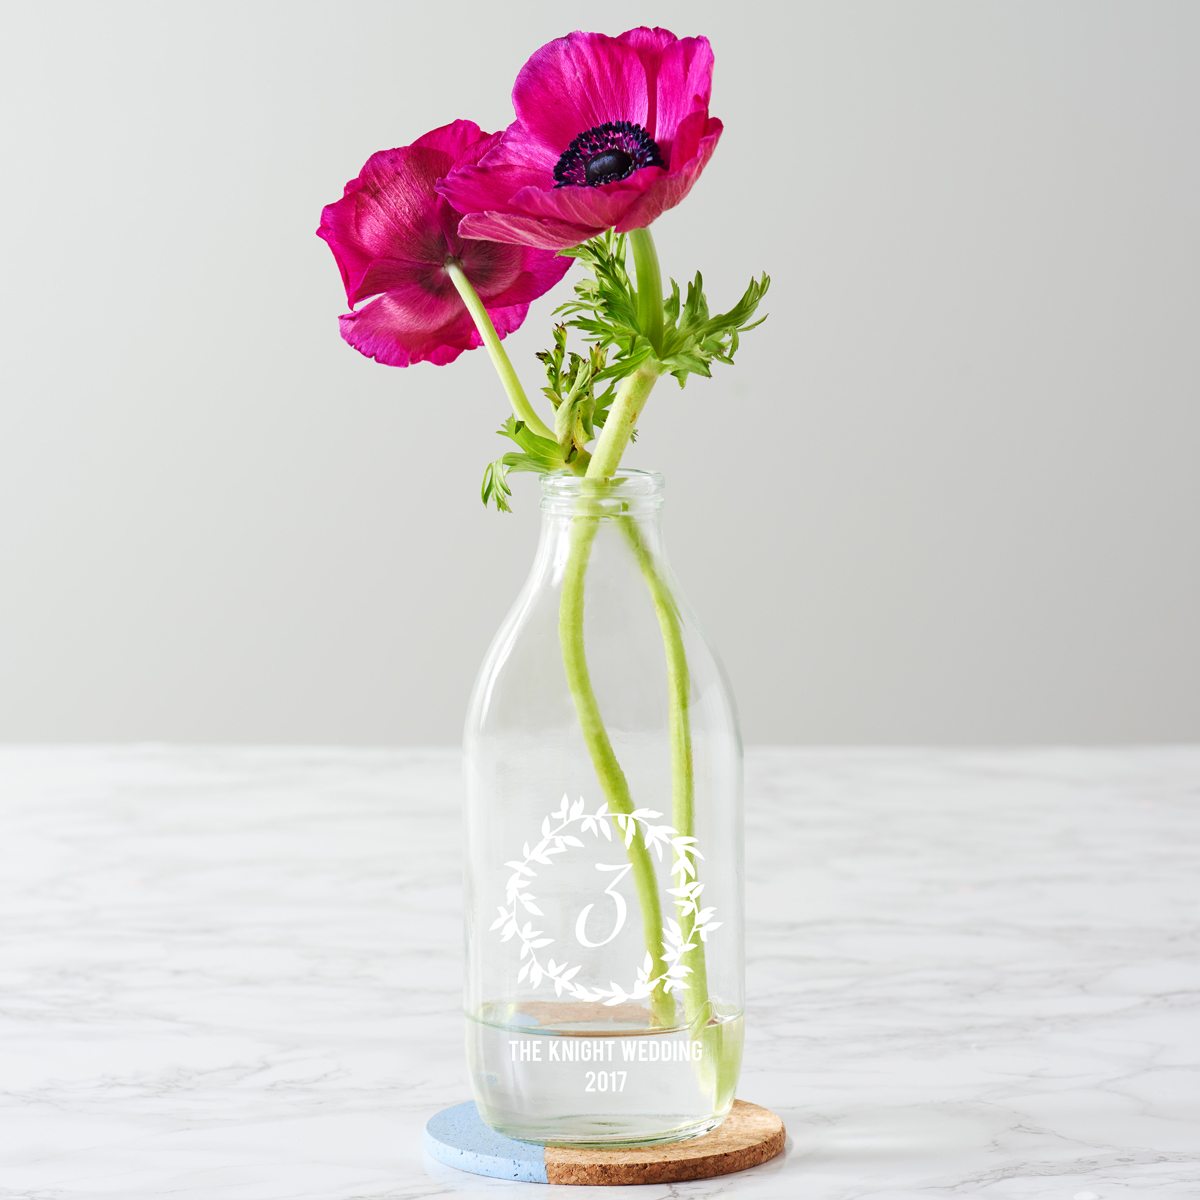 Personalised Wreath Wedding Milk Bottle Centrepiece